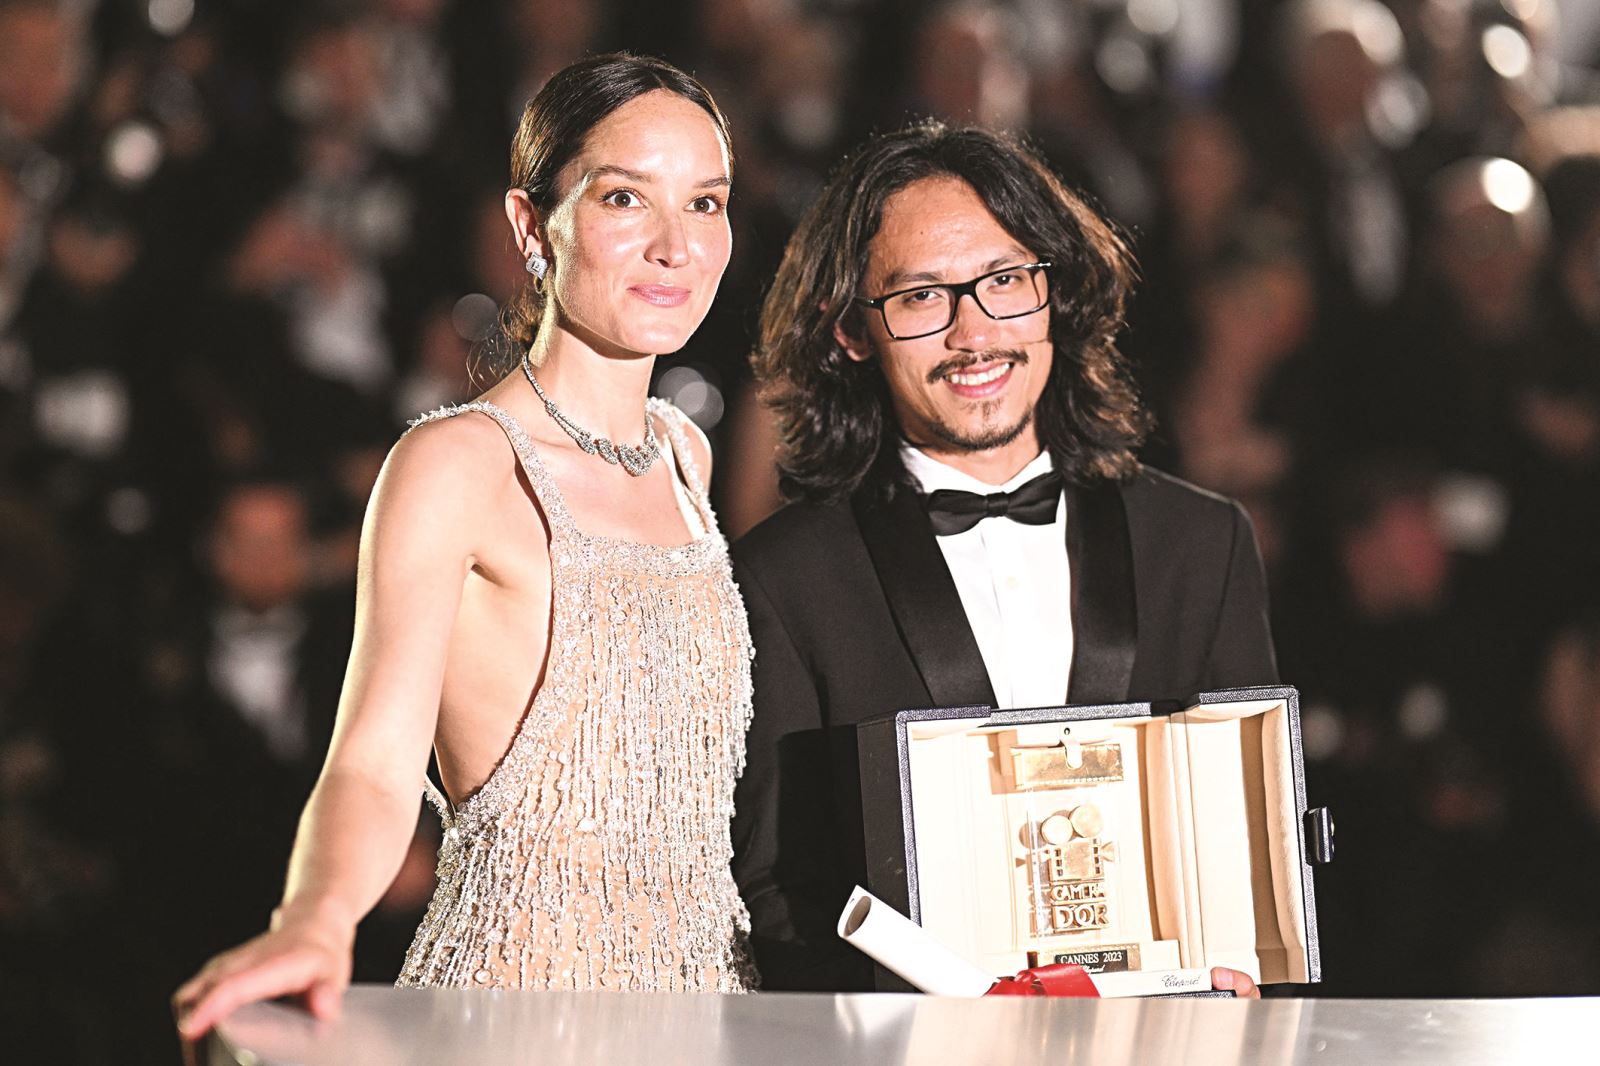 Tại Liên hoan phim (LHP) Cannes 2023, bộ phim Bên trong vỏ kén vàng của đạo diễn Phạm Thiên Ân đã chiến thắng ở hạng mục Camera d'Or (Camera Vàng) - giải thưởng vinh danh các tác phẩm đầu tay xuất sắc. Bộ phim đã khởi chiếu tại Việt Nam kể từ ngày 11/8/2023.